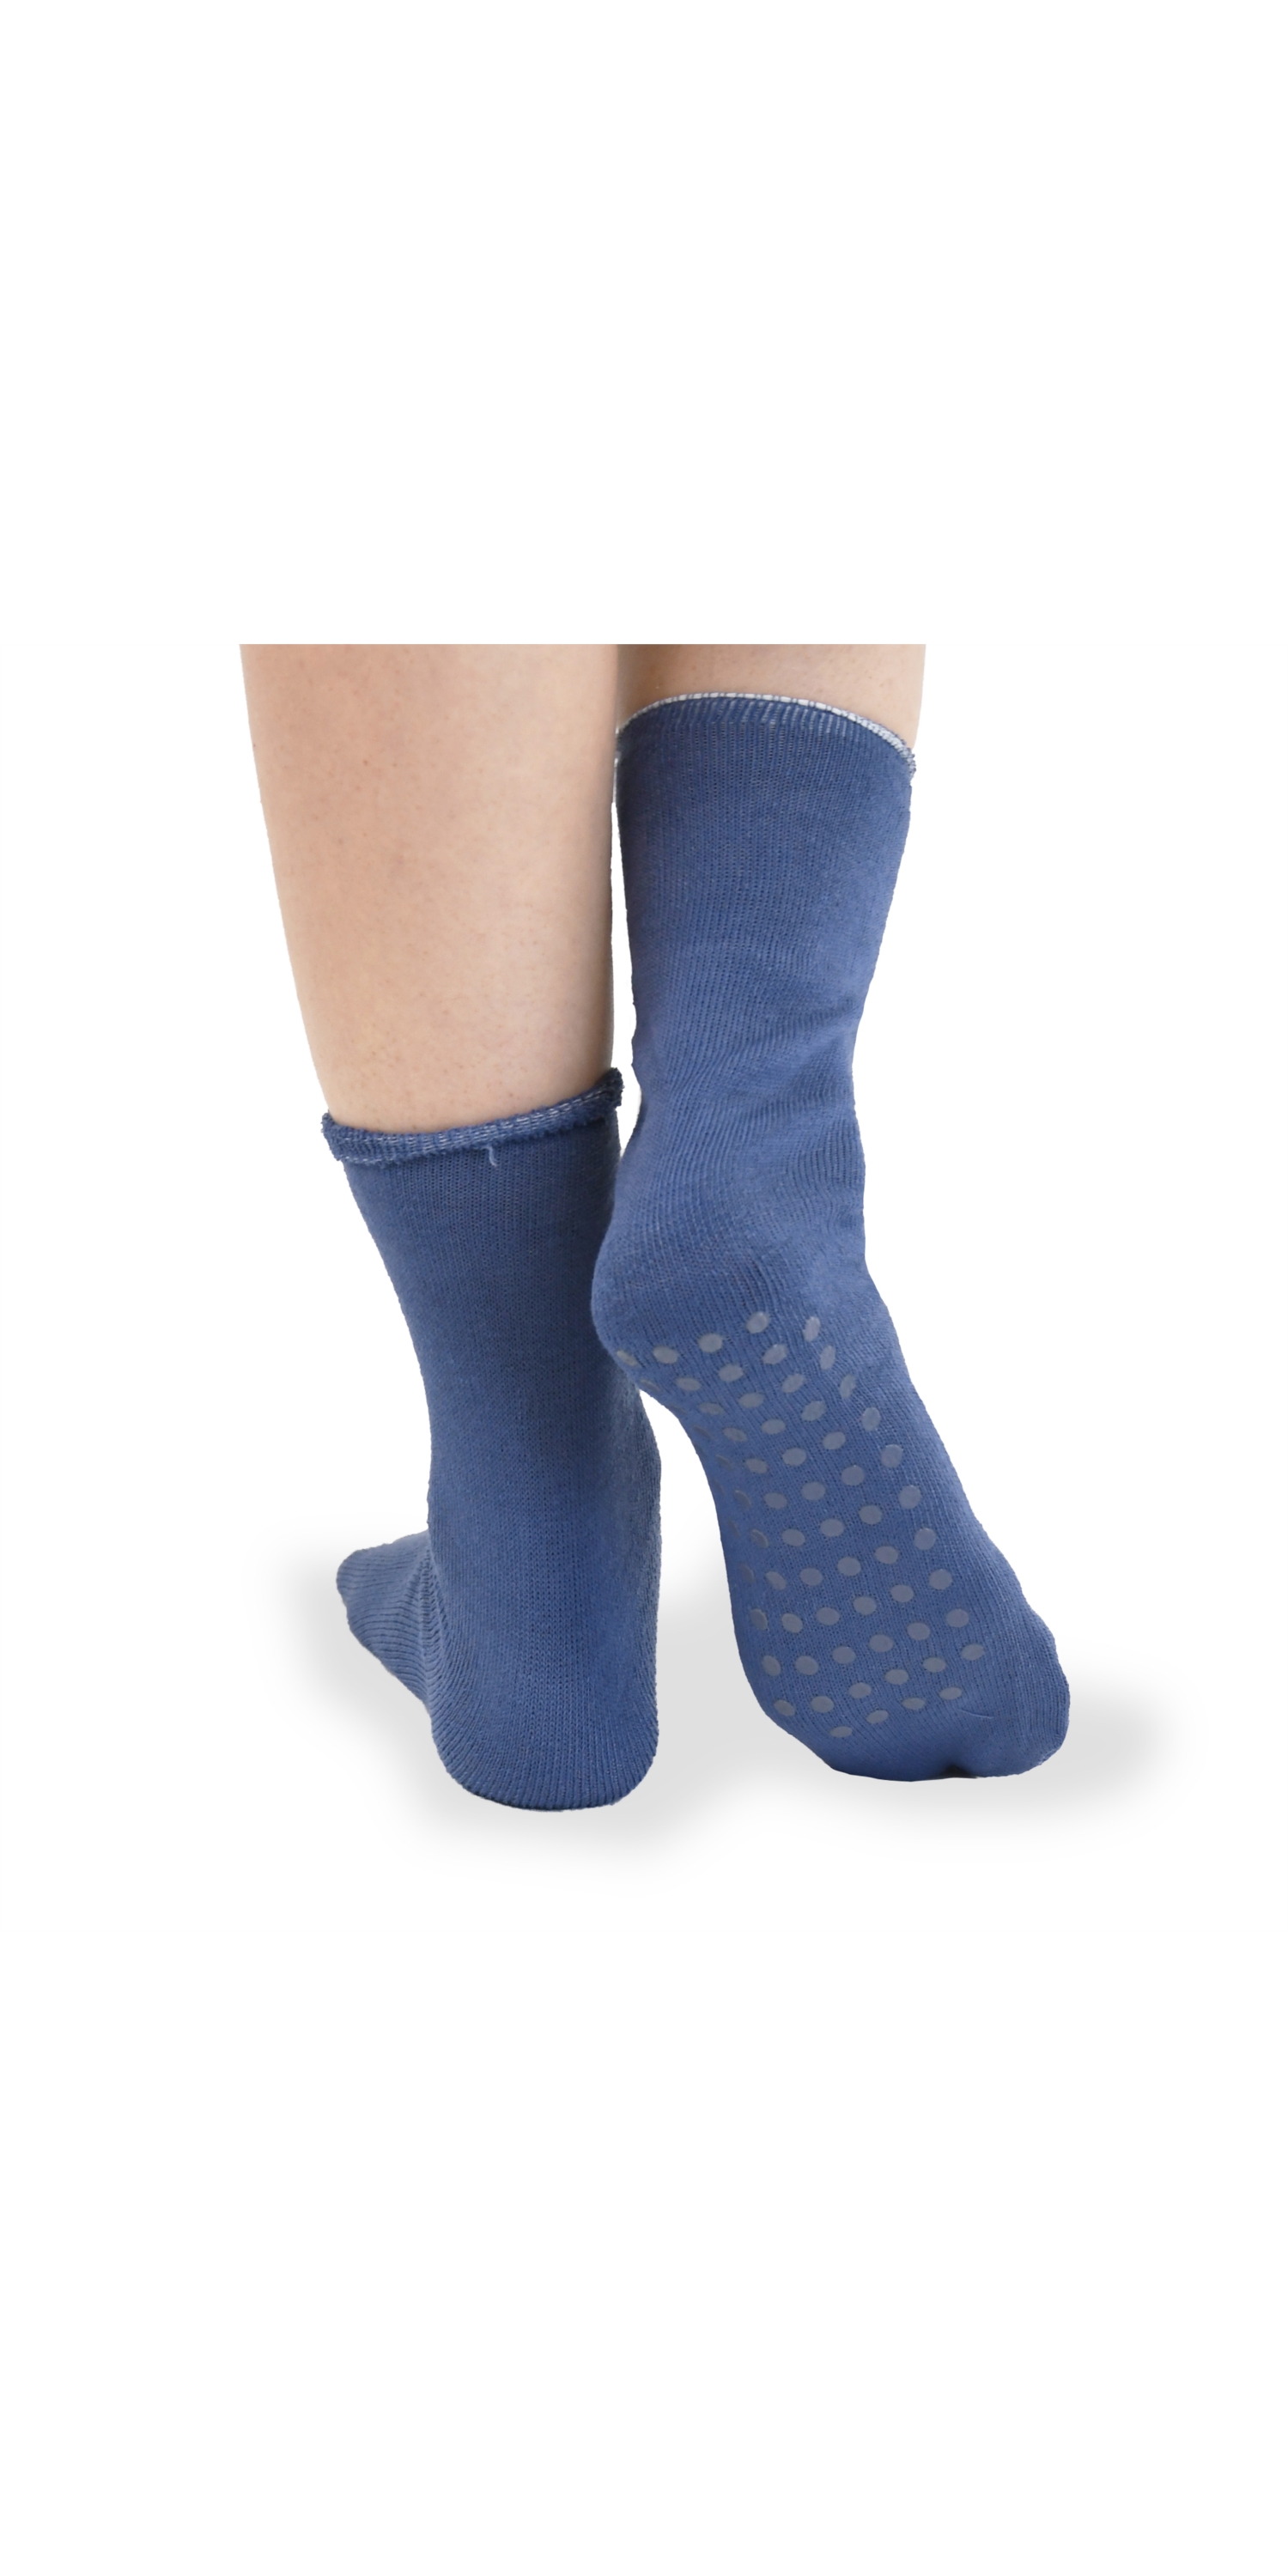 Newcotte 15 Paris Non Slip Ankle Dance Socks Lightweight Non Slip